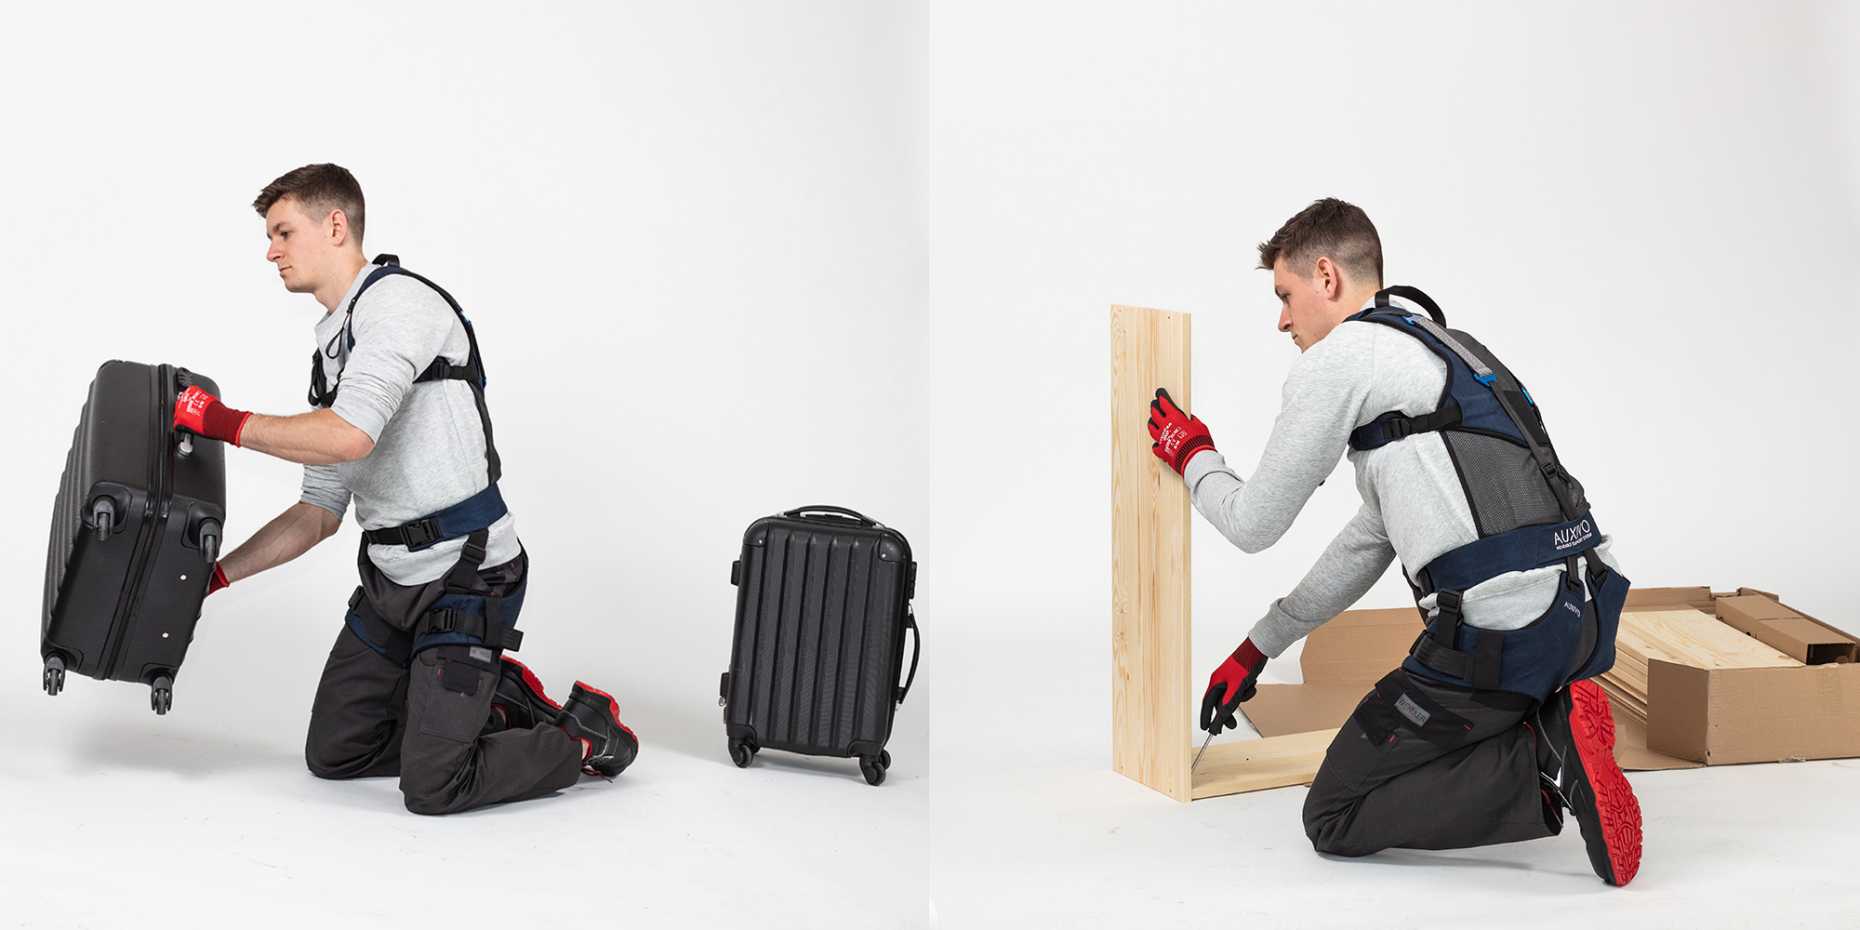 Mann trägt Exoskelett und arbeitet mit Koffern sowie mit Holz.